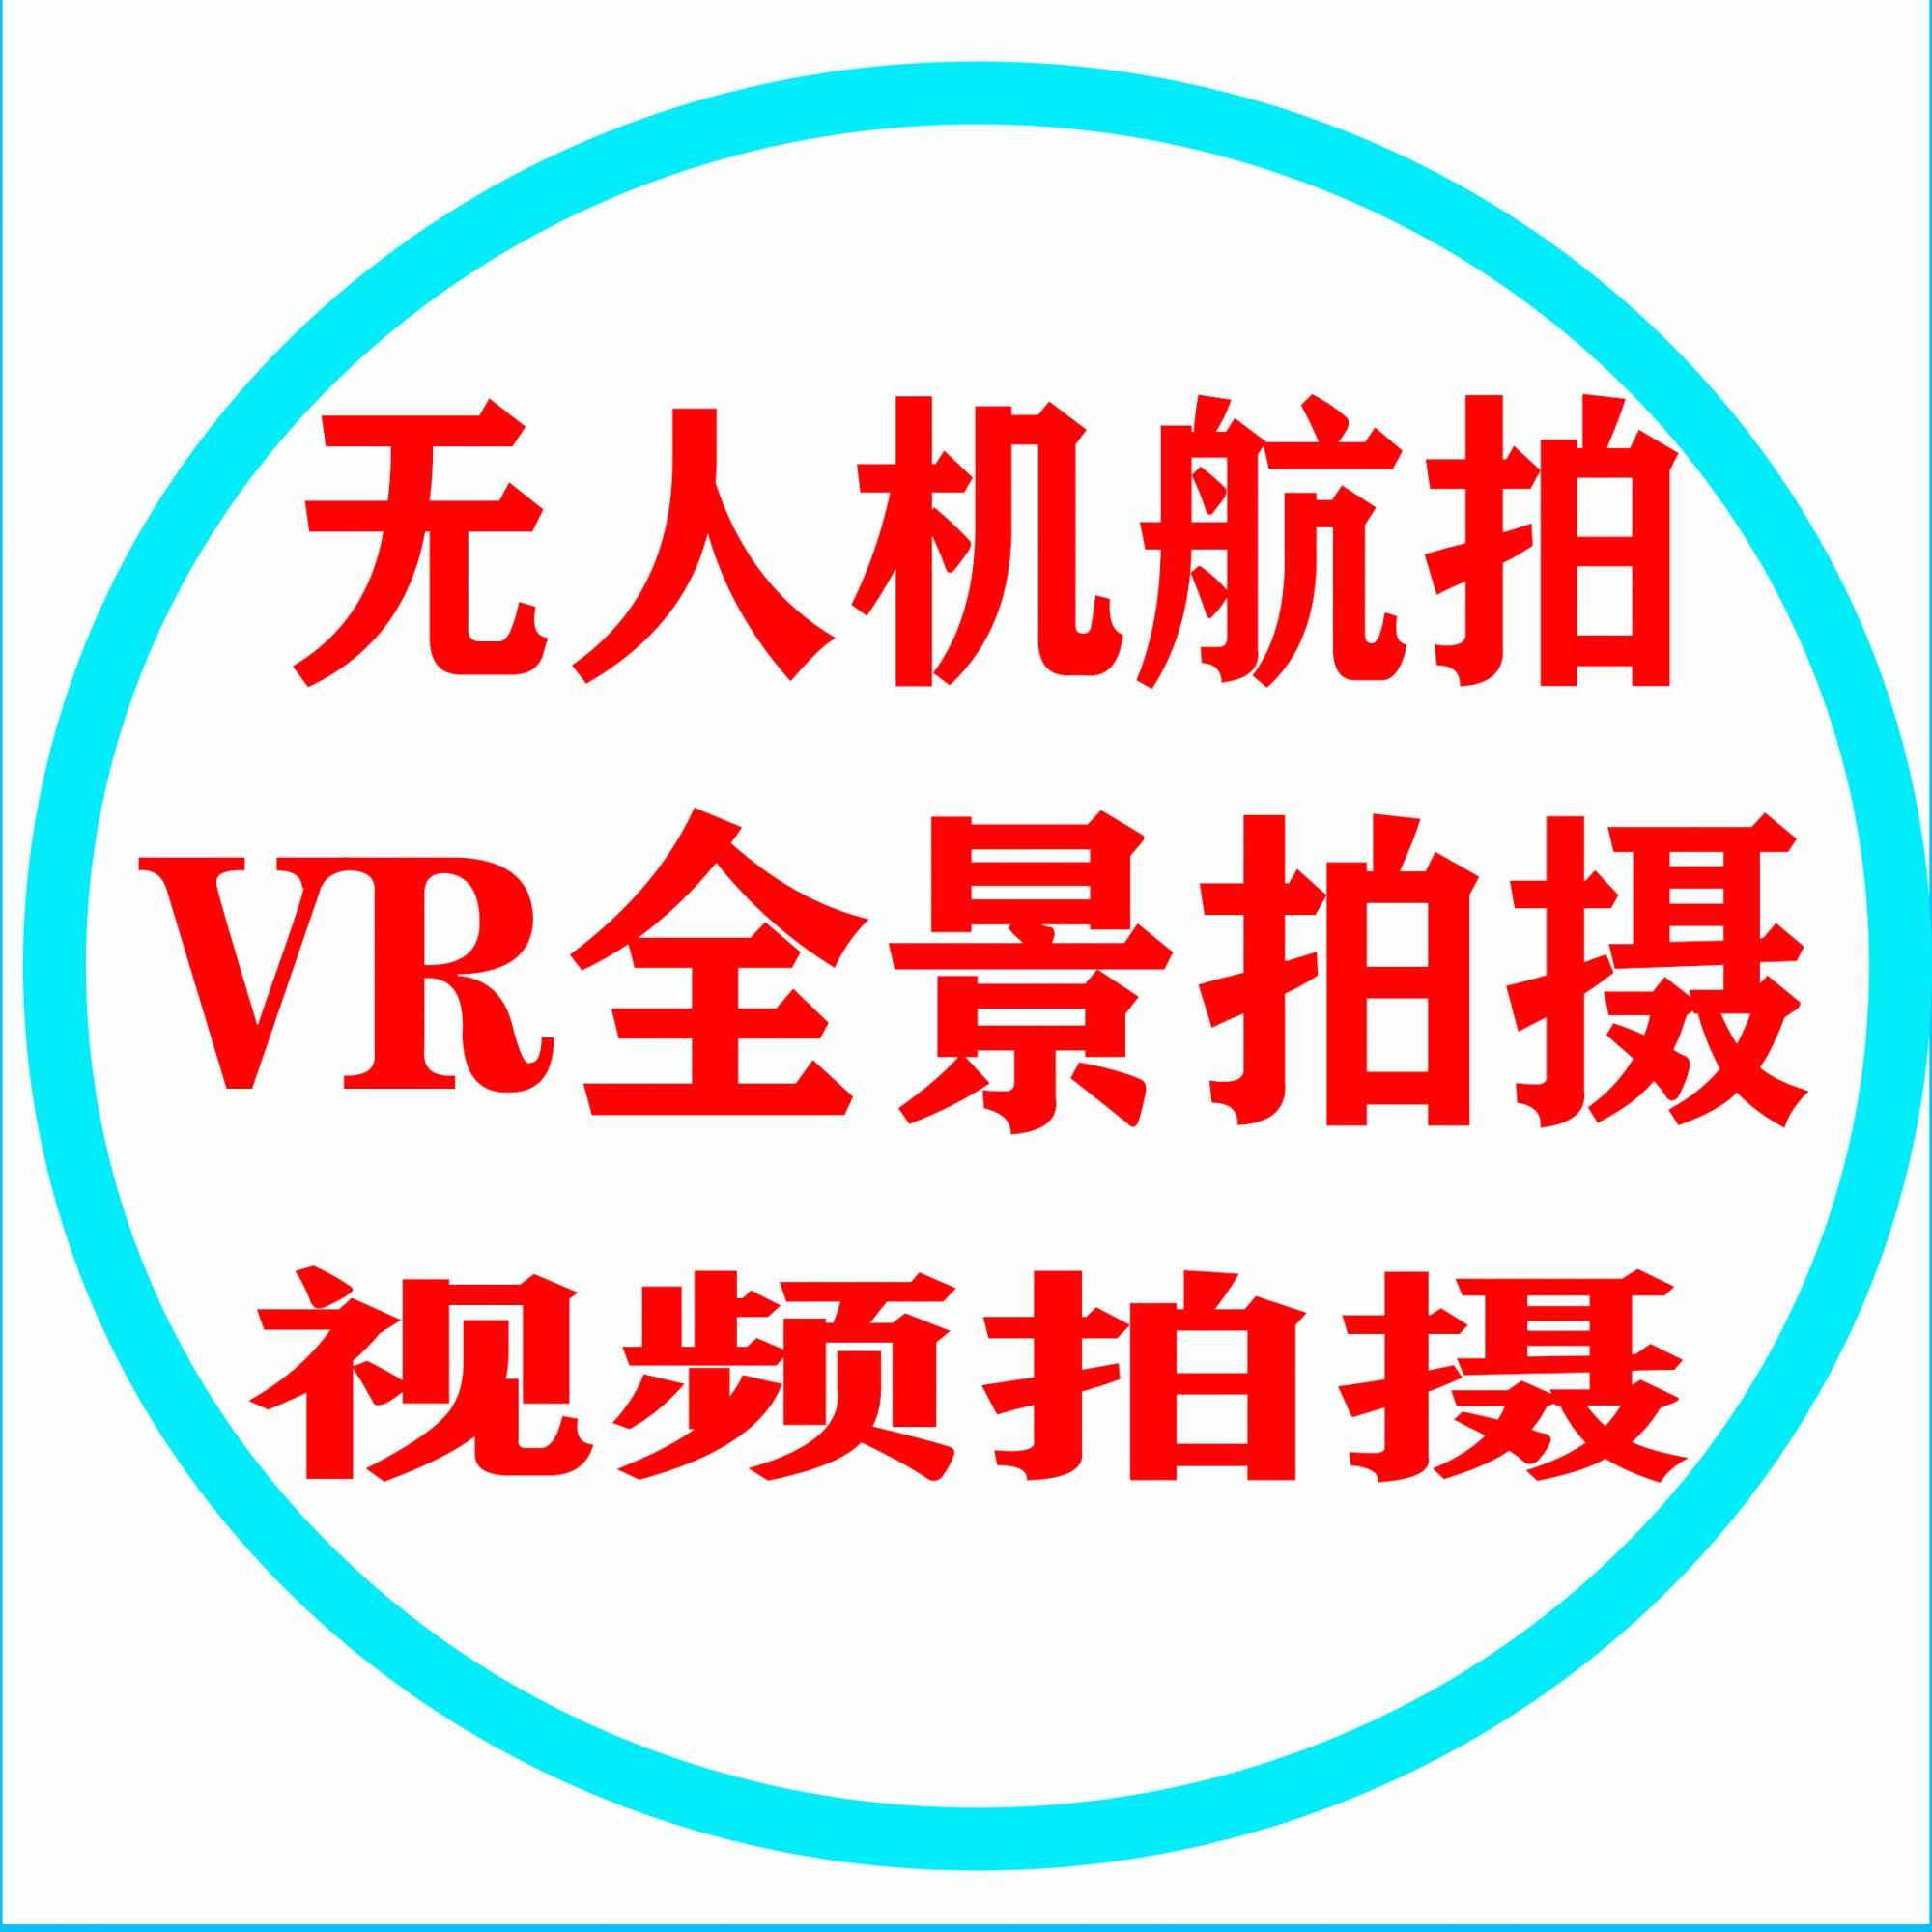 汇景宣重庆VR全景拍摄公司为您提供专业的服务